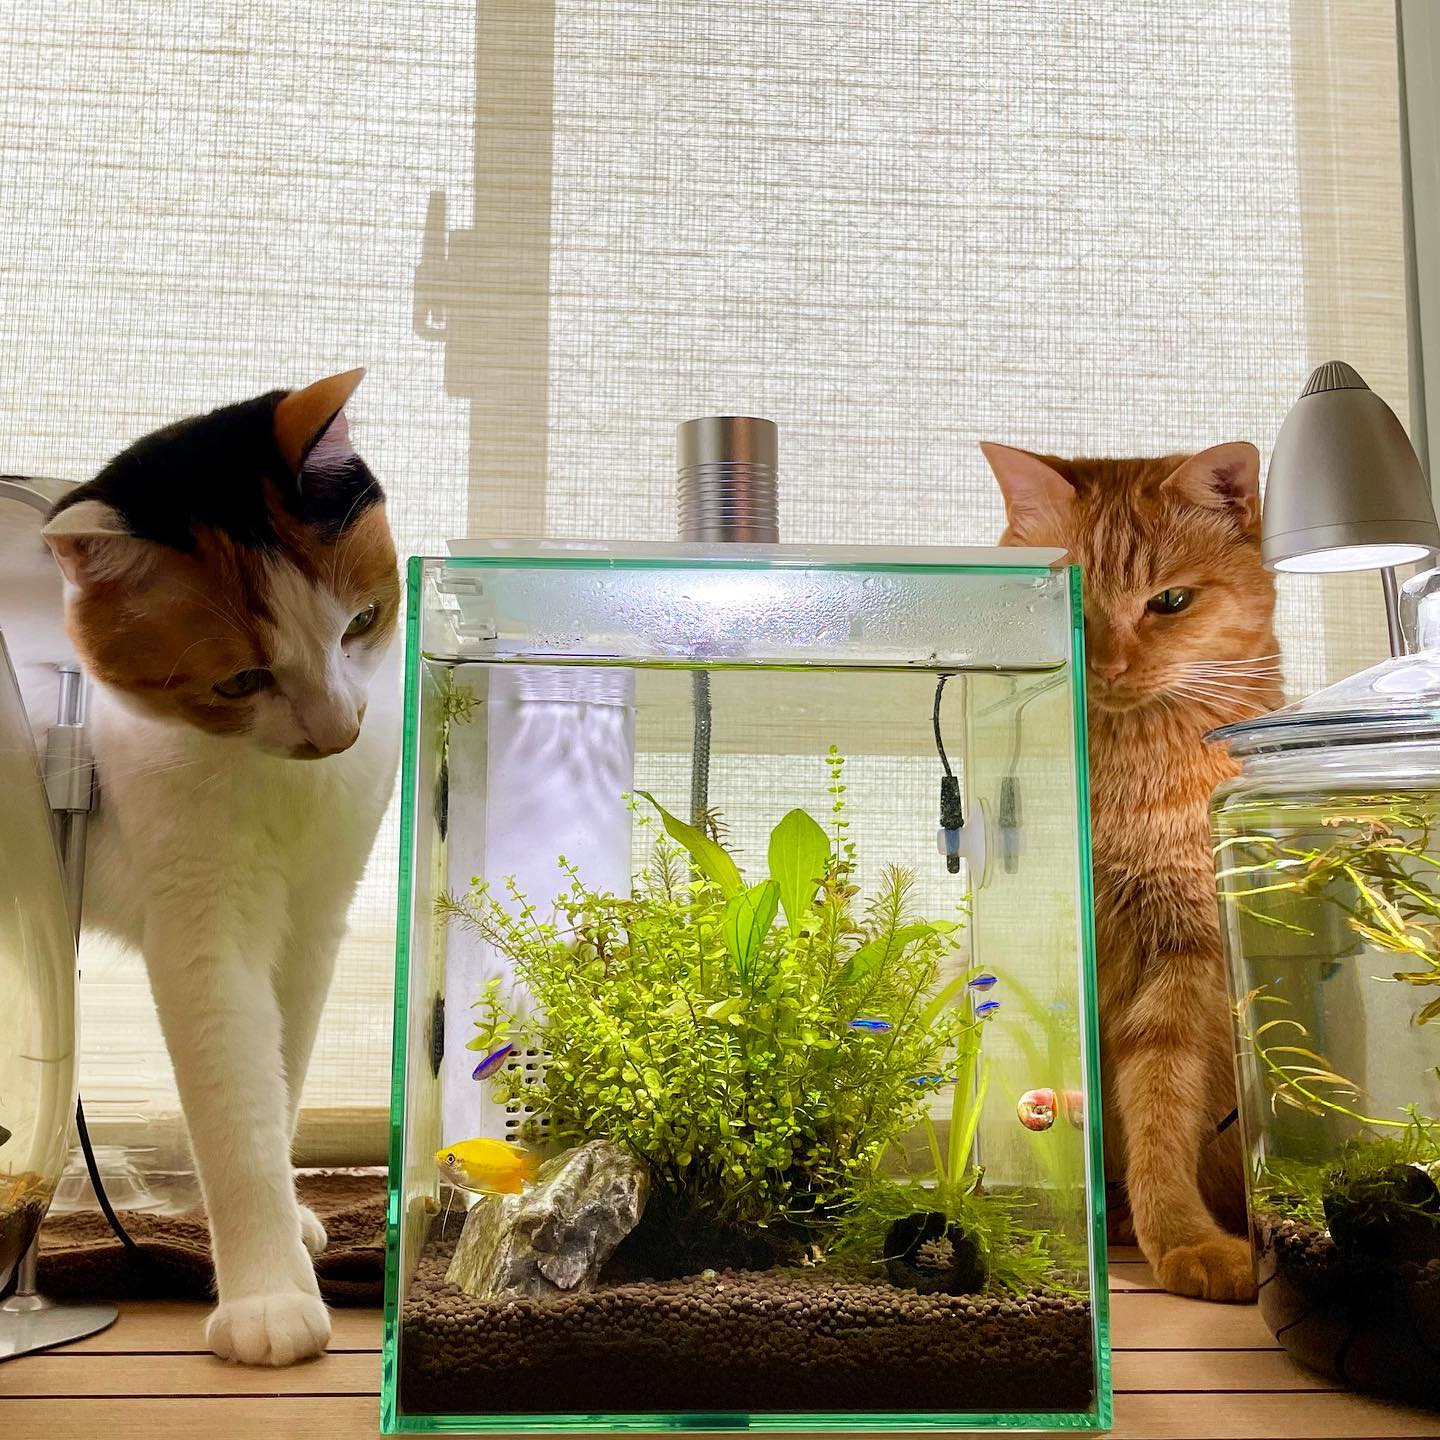 春から、私の趣味にボトルアクアリウム 2つと熱帯魚水槽1つが加わったのだけど、猫の好奇心が煽られまくってるでも、2人ともお利口さんだから観察専門。私よりも熱心だから、こっそり観察日記とかつけてそう。レッドラムズホーンが繁殖しまくってます。お客様で、欲しい方いらっしゃったらご遠慮なく#熱帯魚と猫